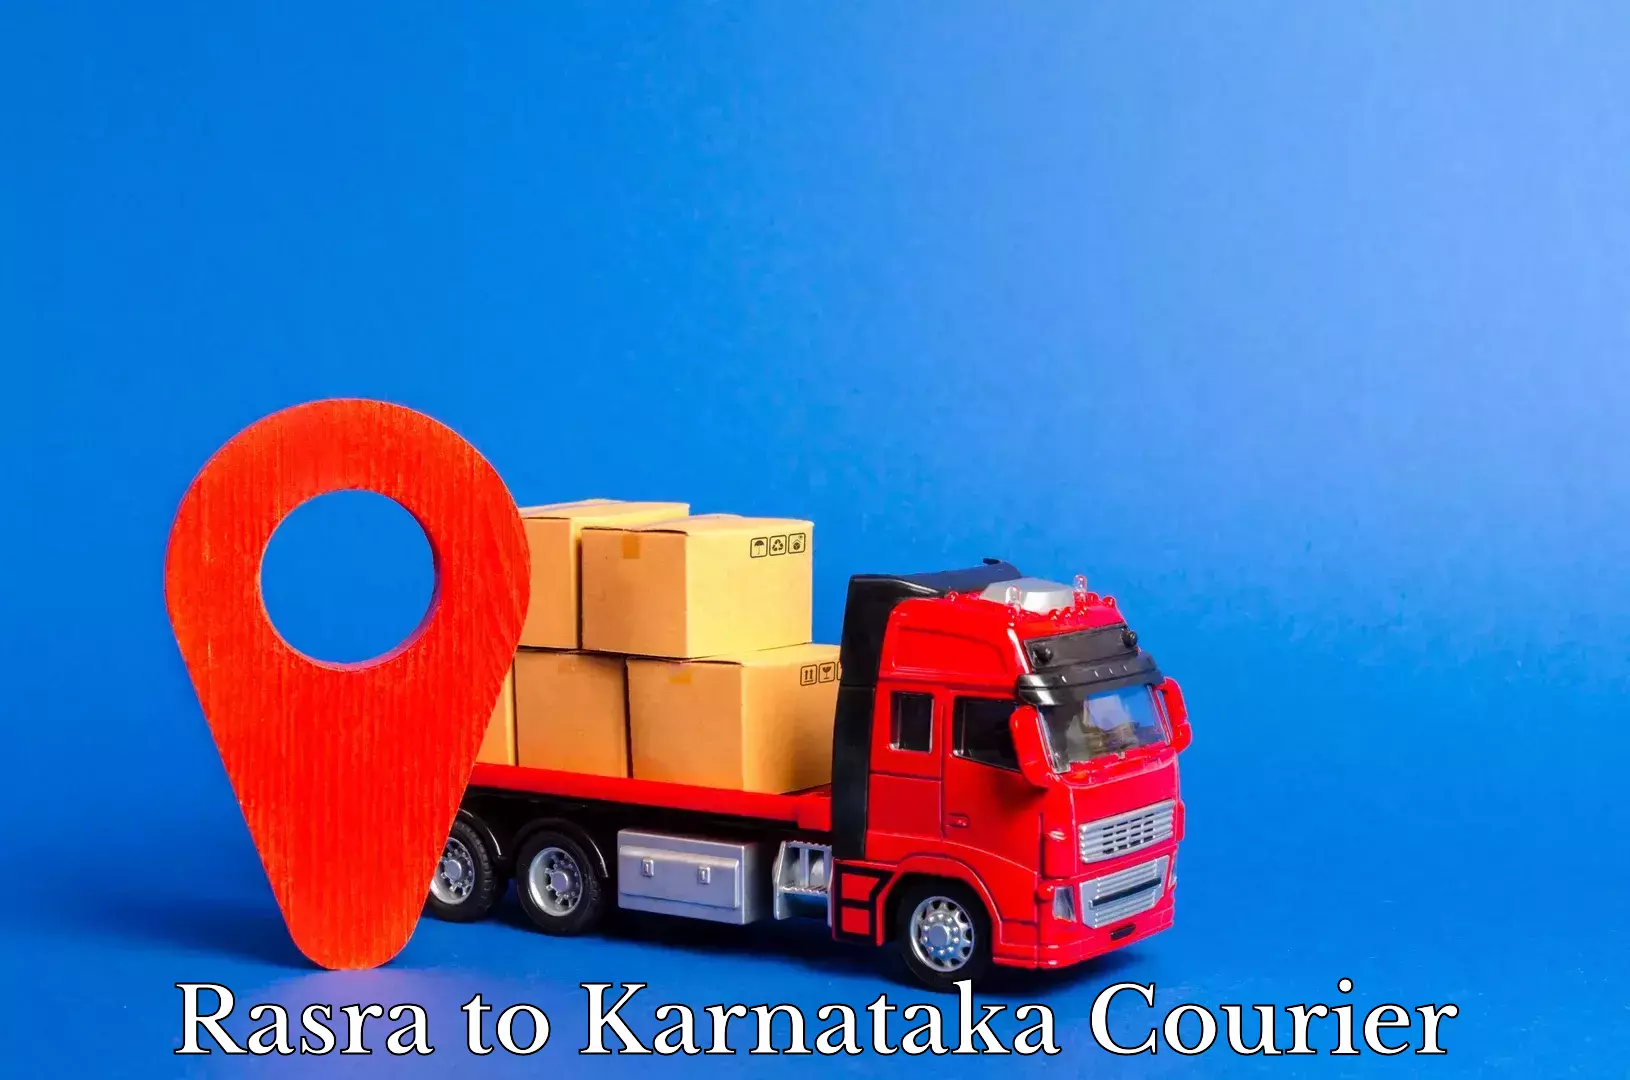 Next-day freight services Rasra to Karnataka